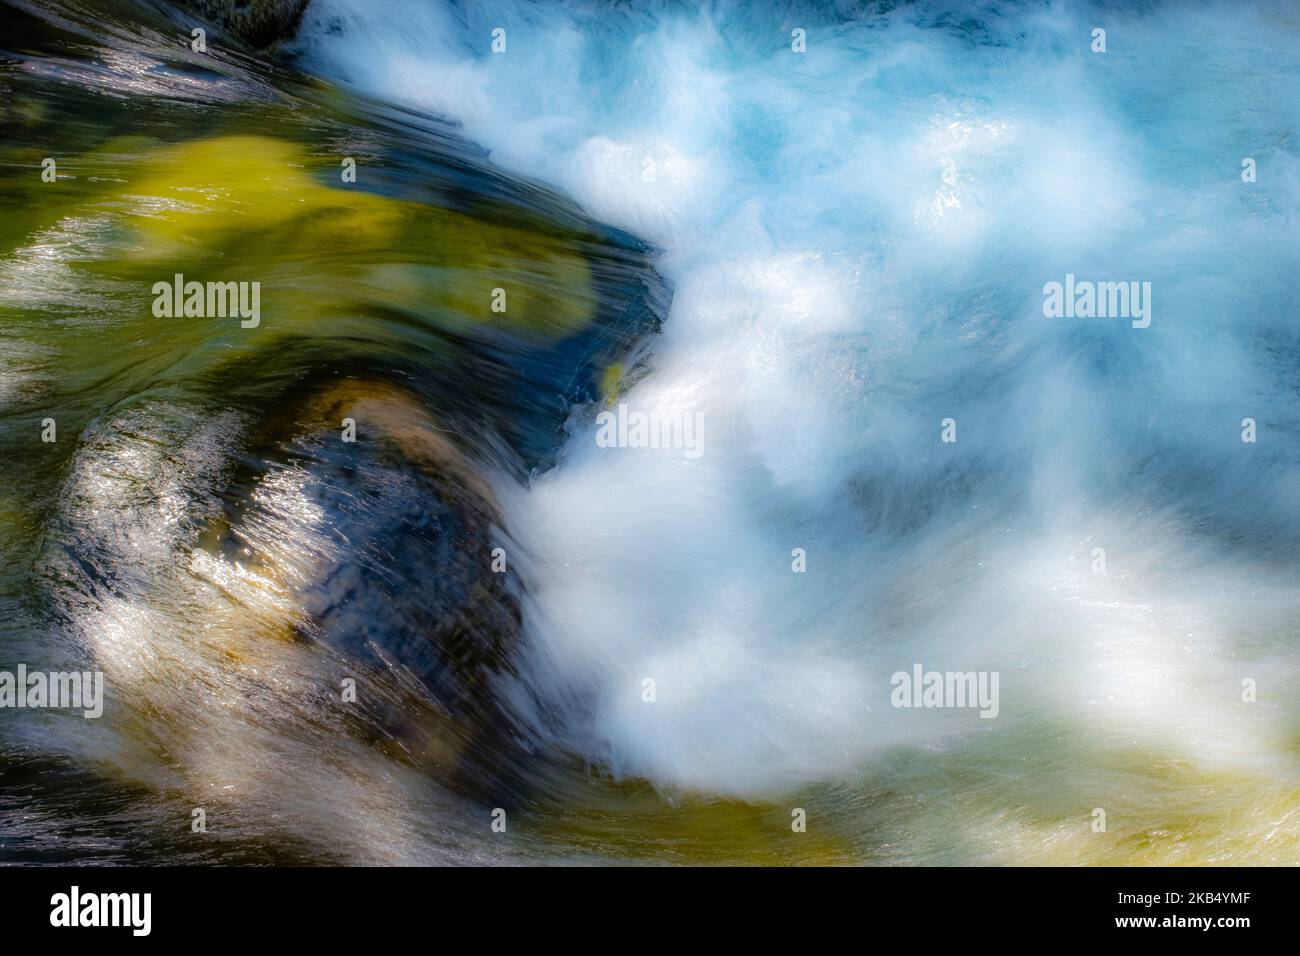 lunga esposizione immagine astratta di acqua vorticosa in un fiume di montagna di acqua cristallina, toni verdi, blu e bianchi Foto Stock